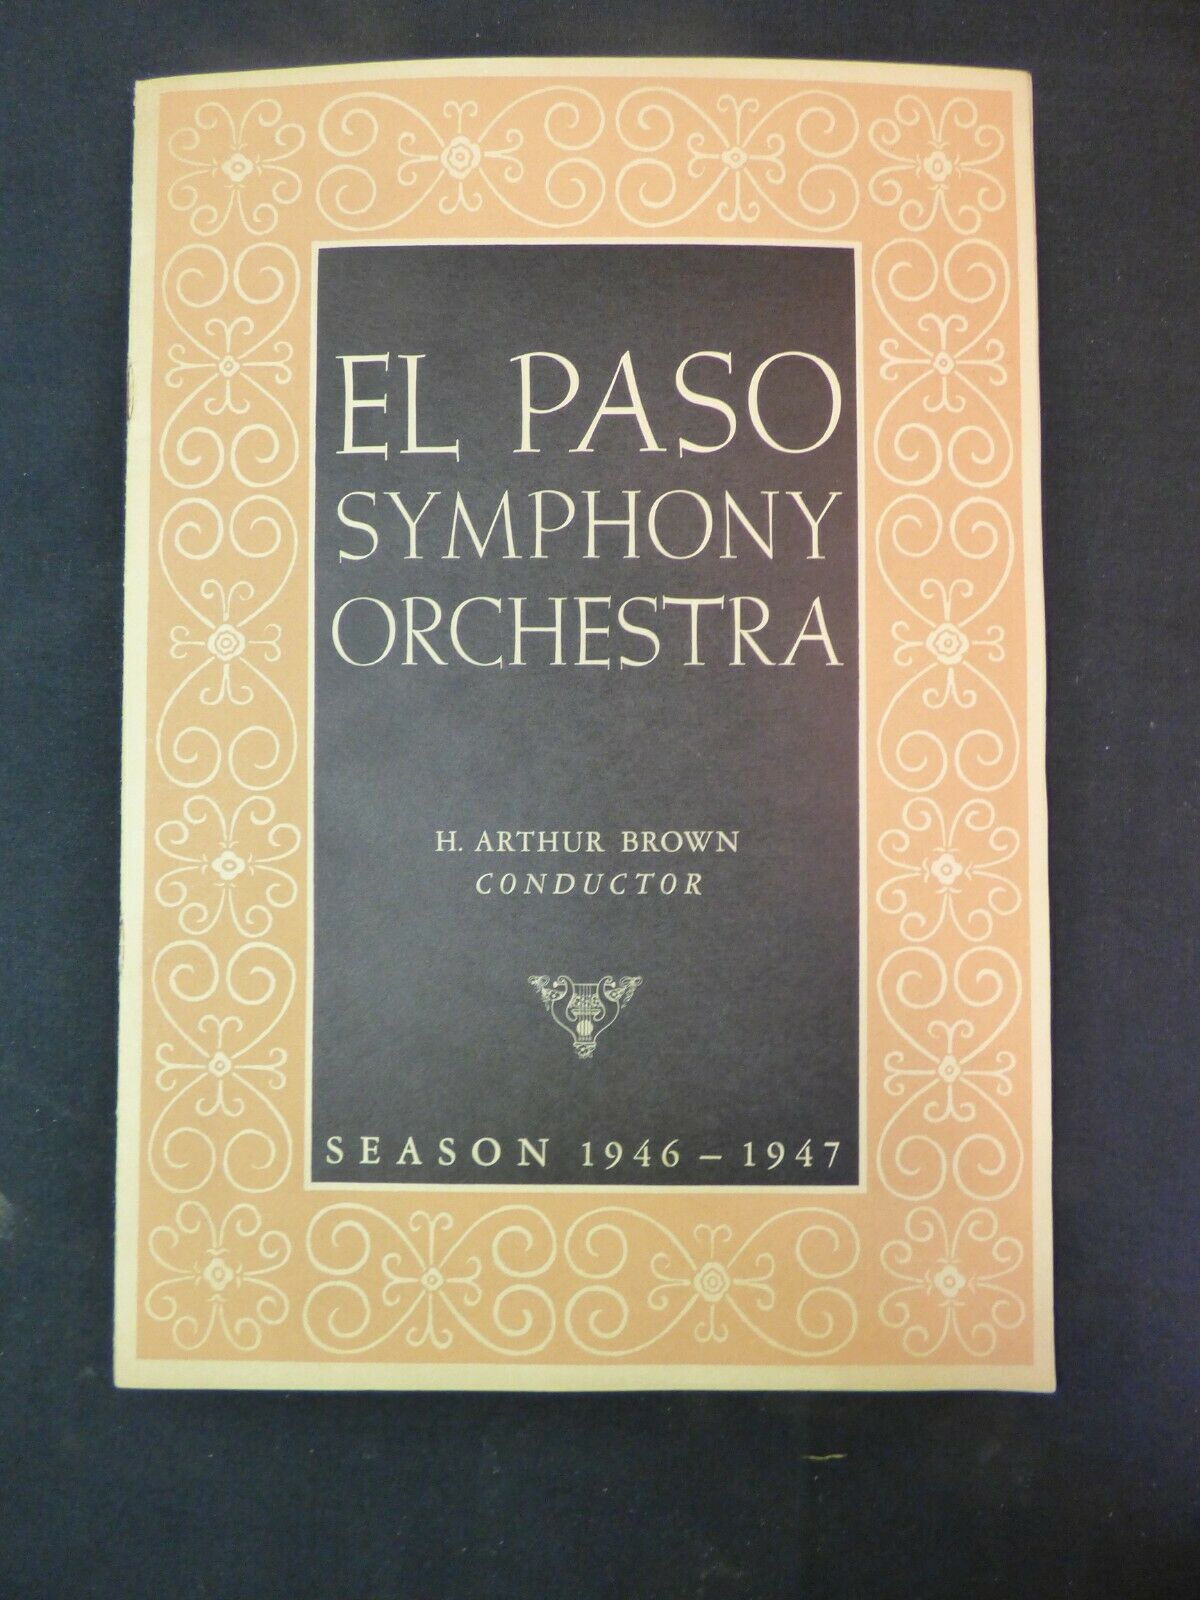 1946 Nov - Program - El Paso Symphony Orchestra -h Arthur Brown Conductor